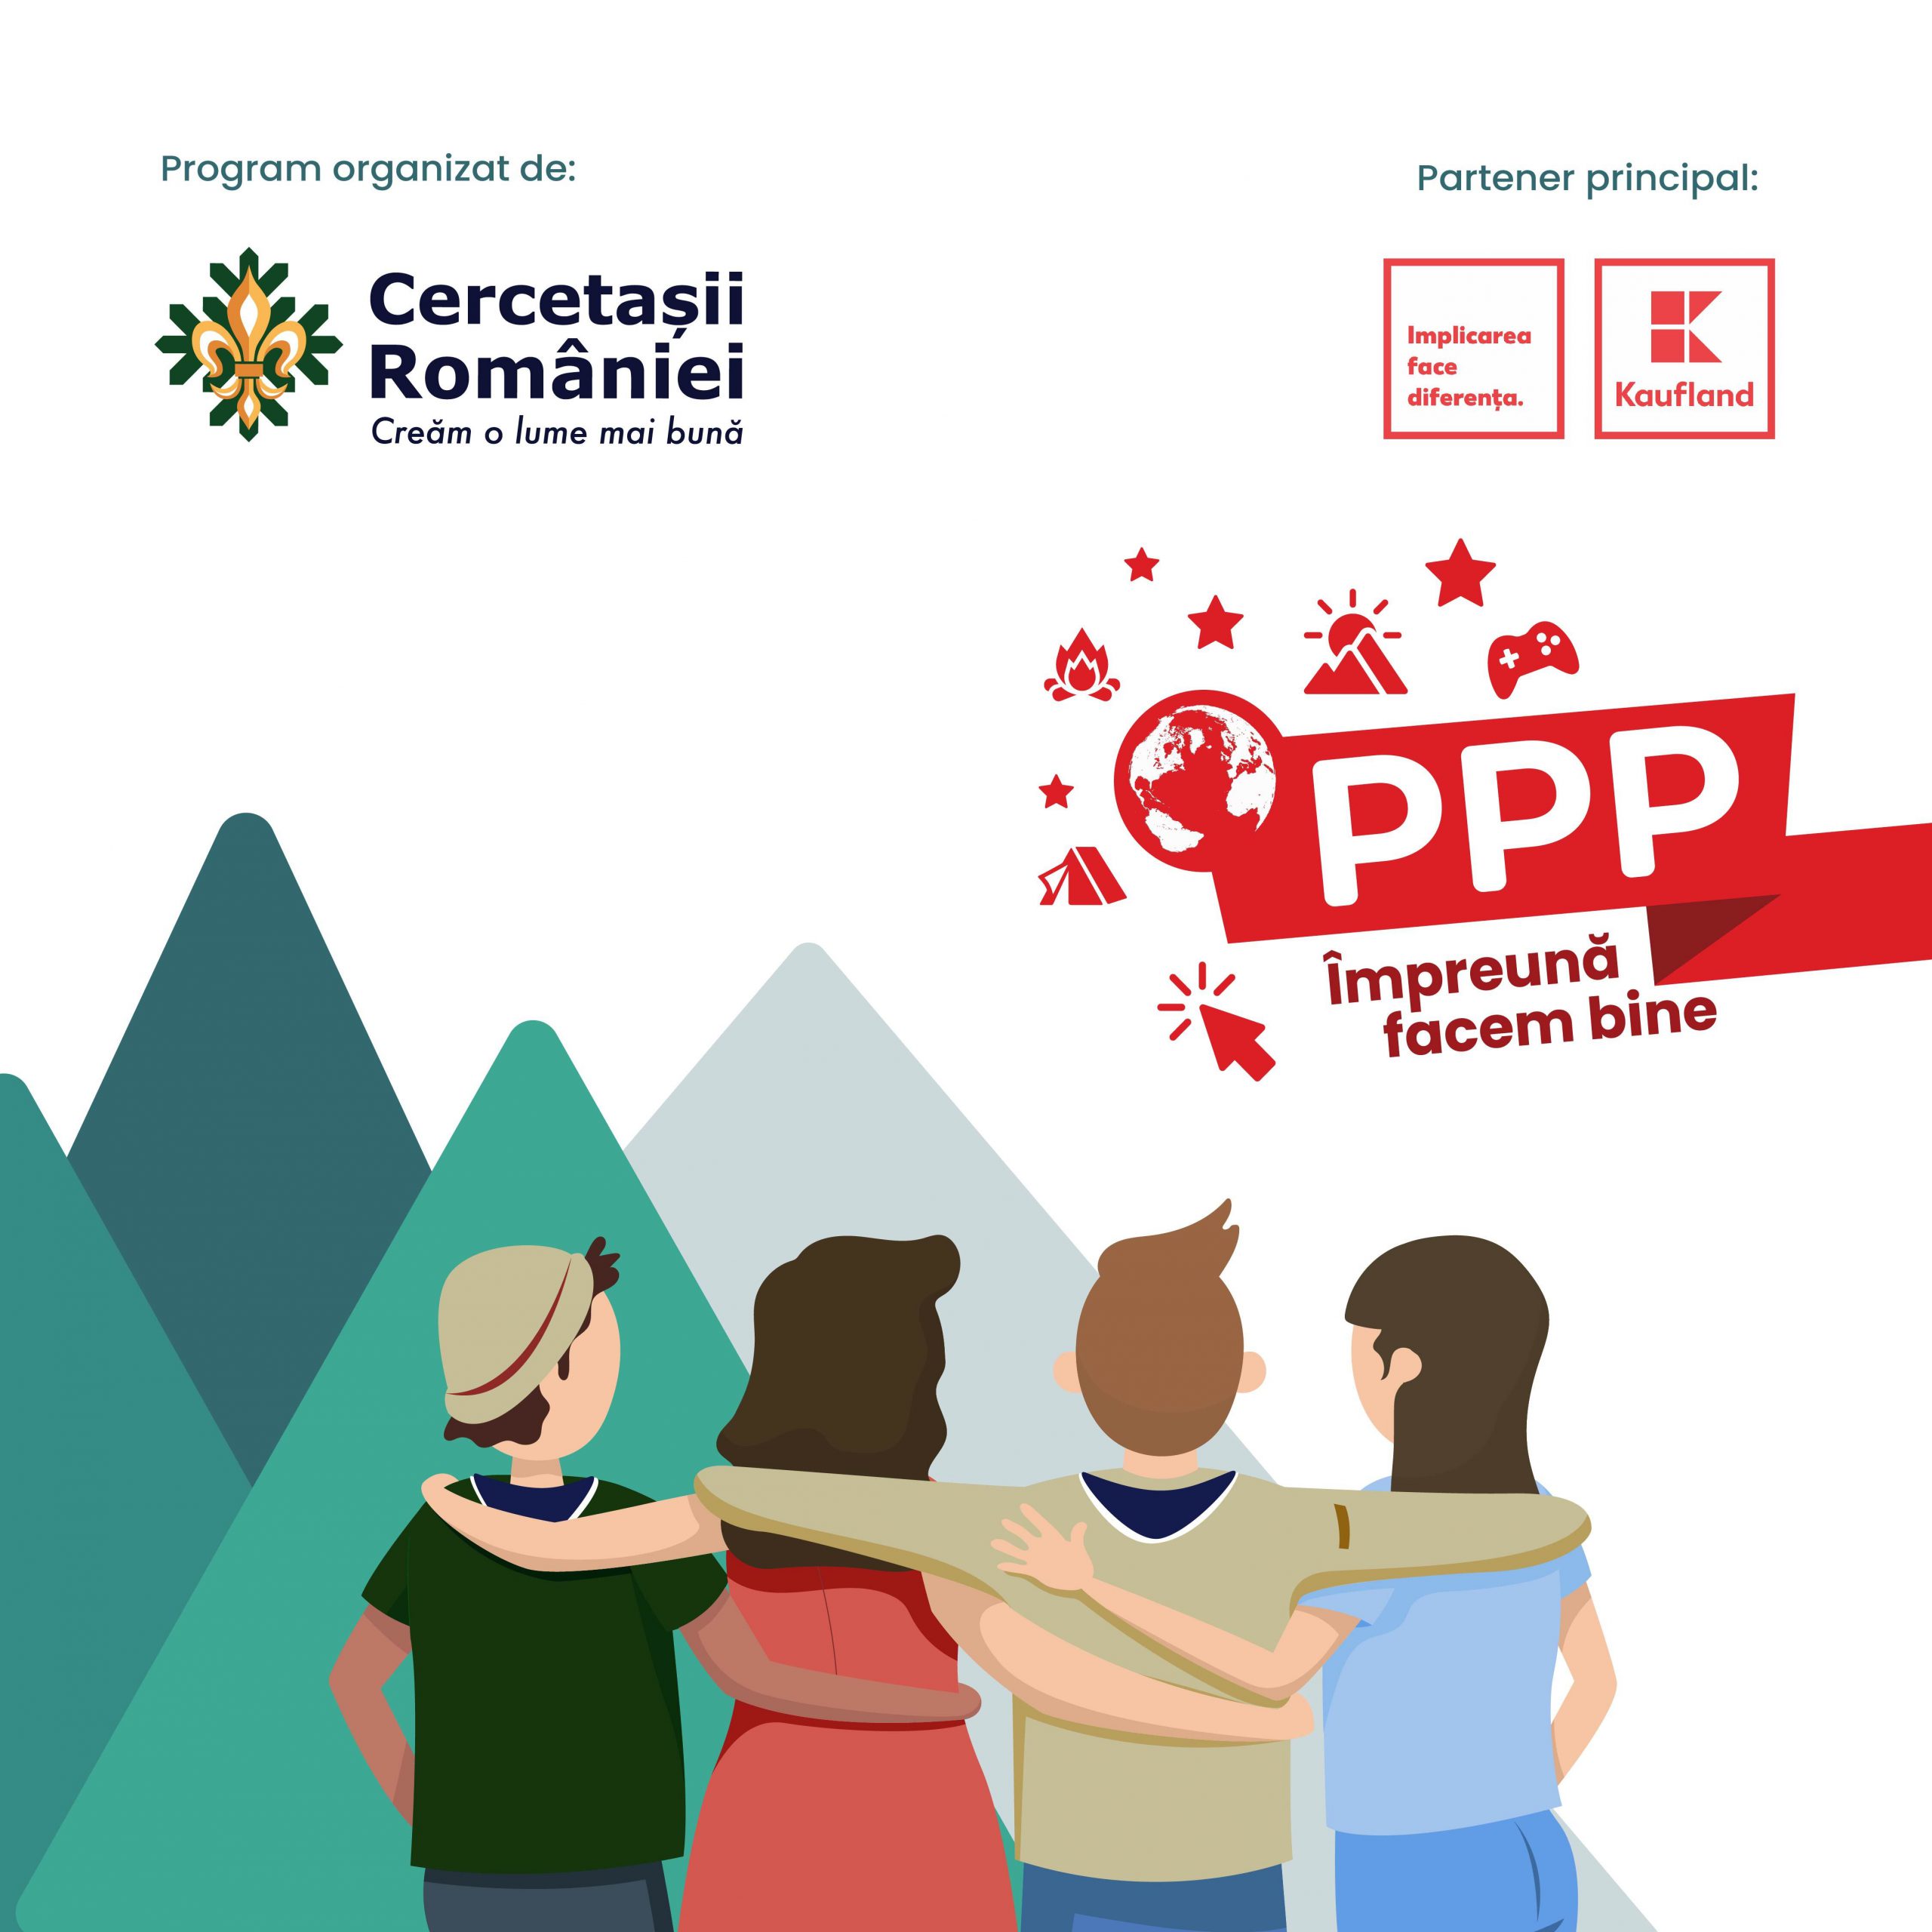 Cercetașii României se implică activ în comunitate